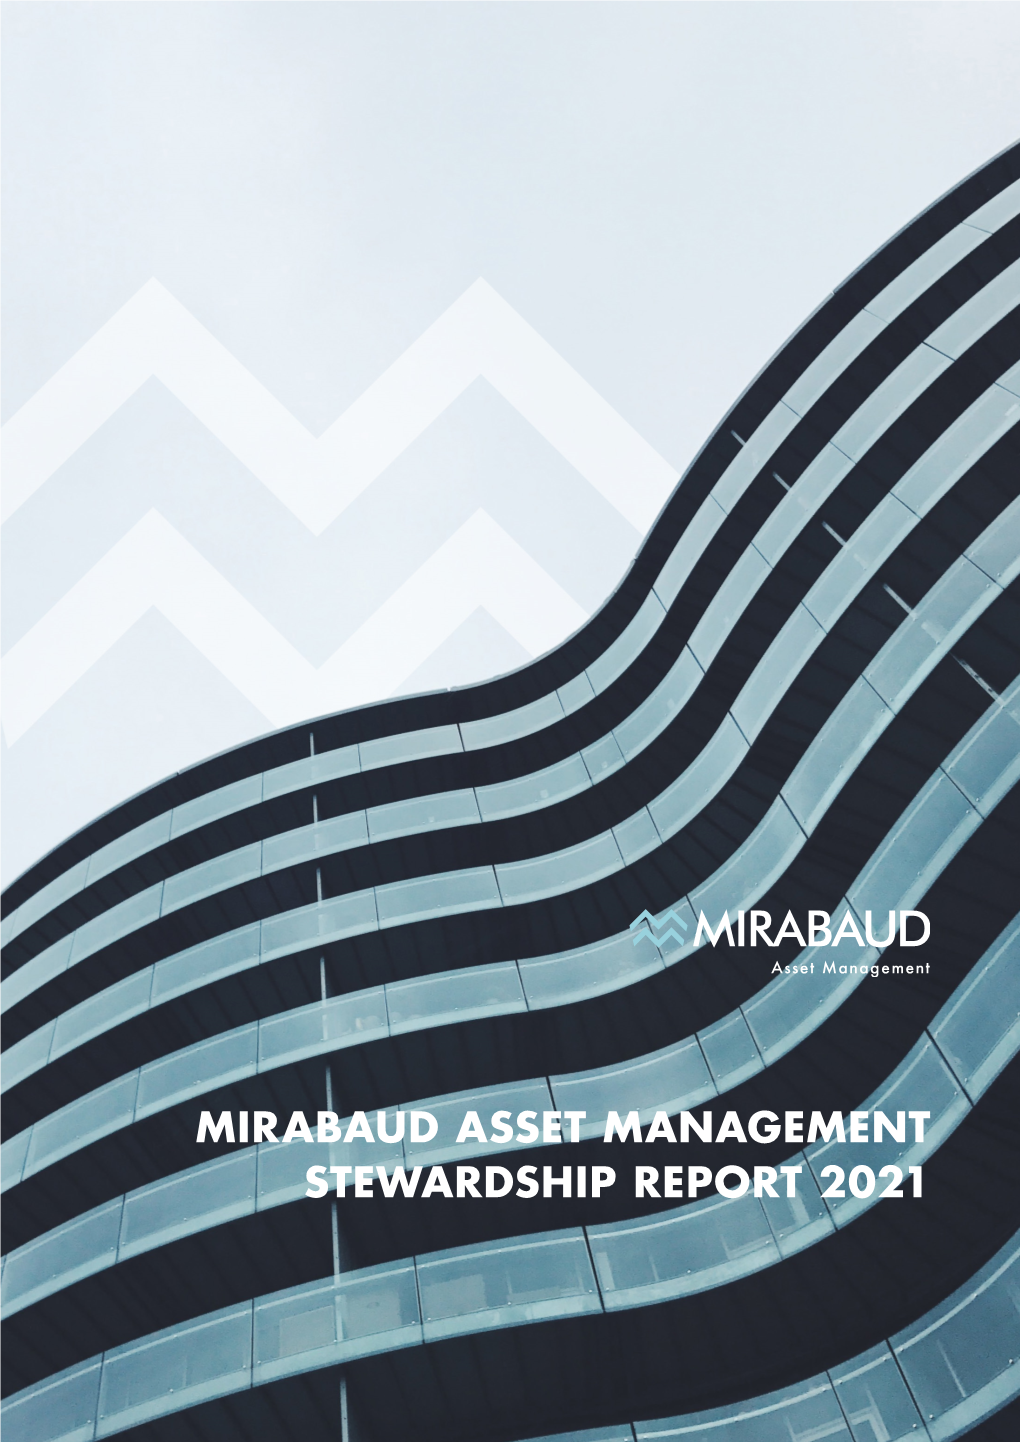 Mirabaud Asset Management Stewardship Report 2021